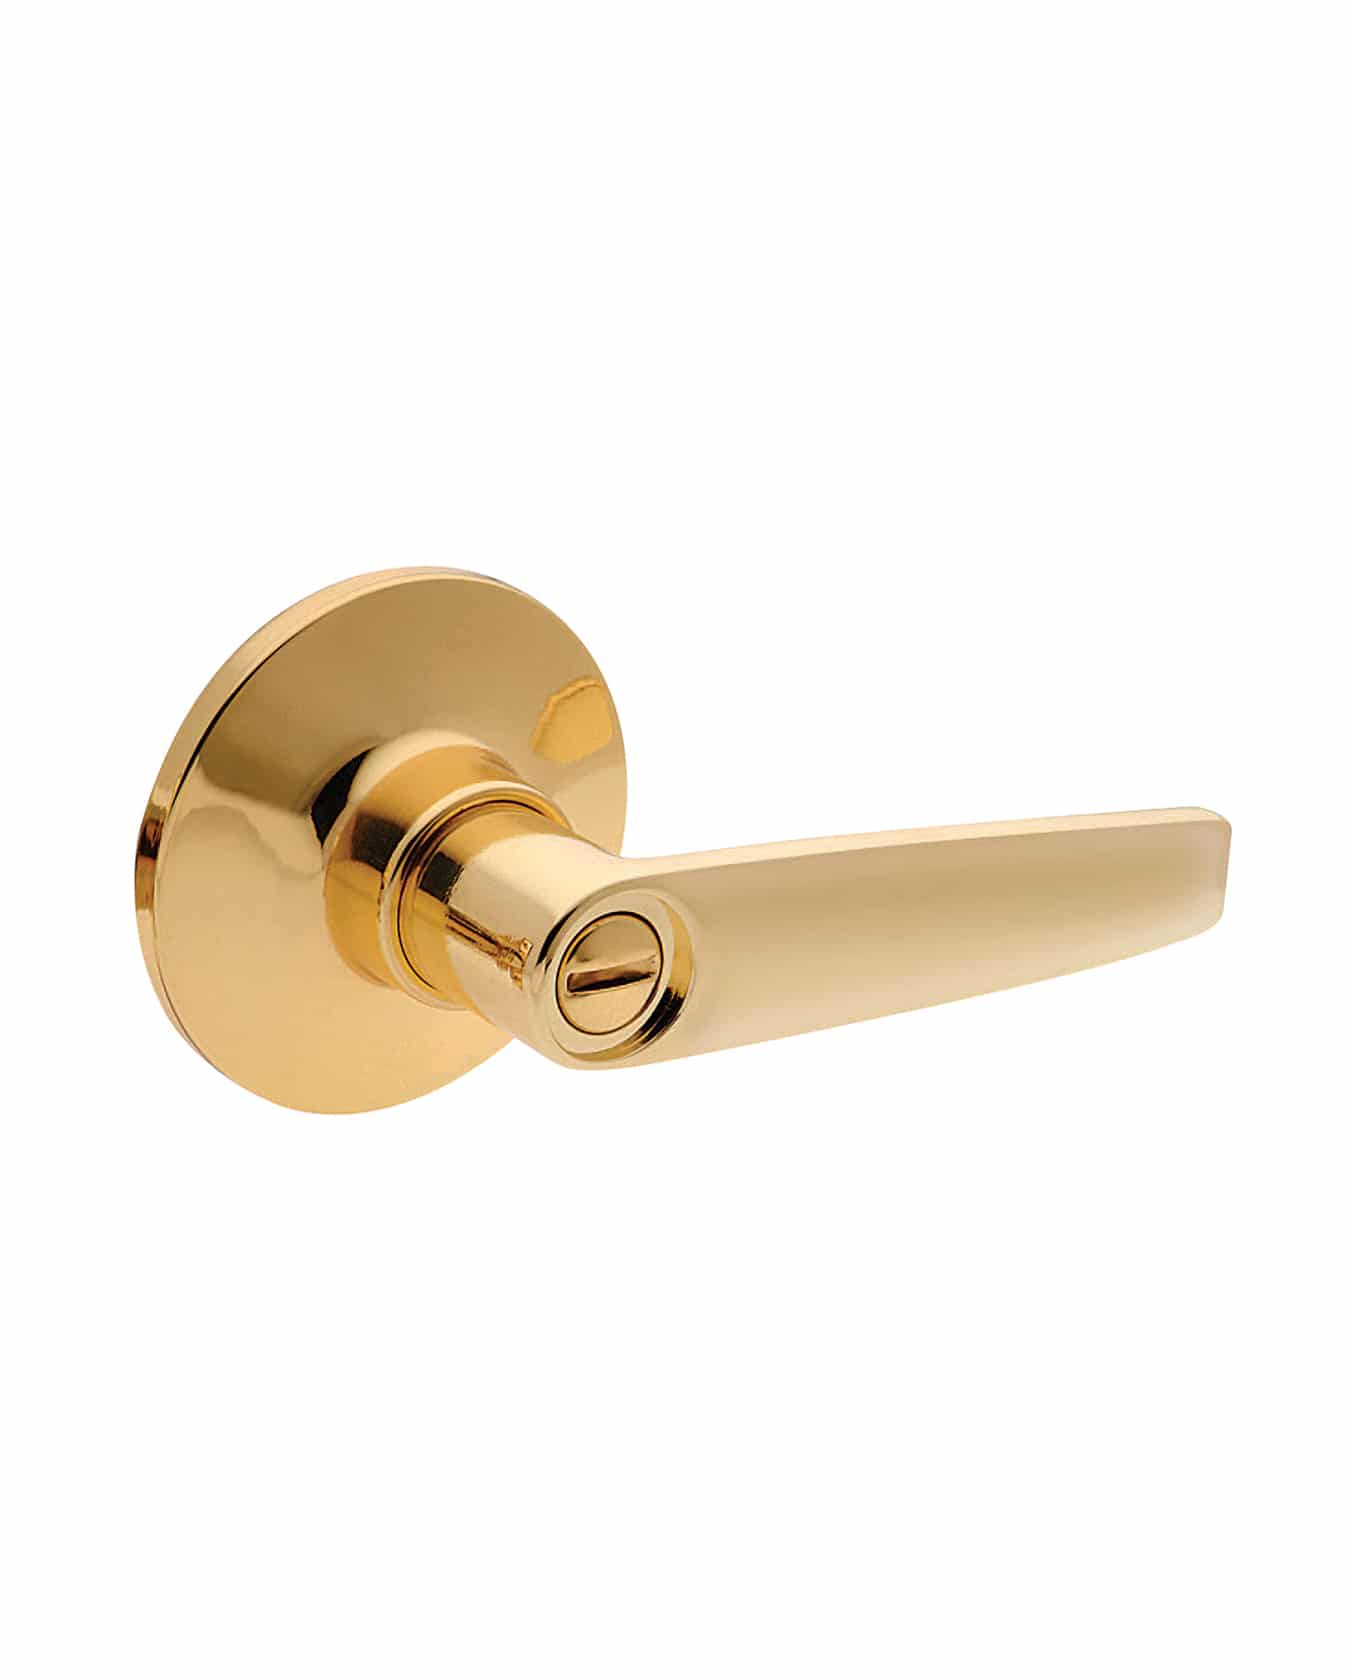 door lock,door handle lock,residential door lock,hardware handles,standard doors lock,modern lock handles